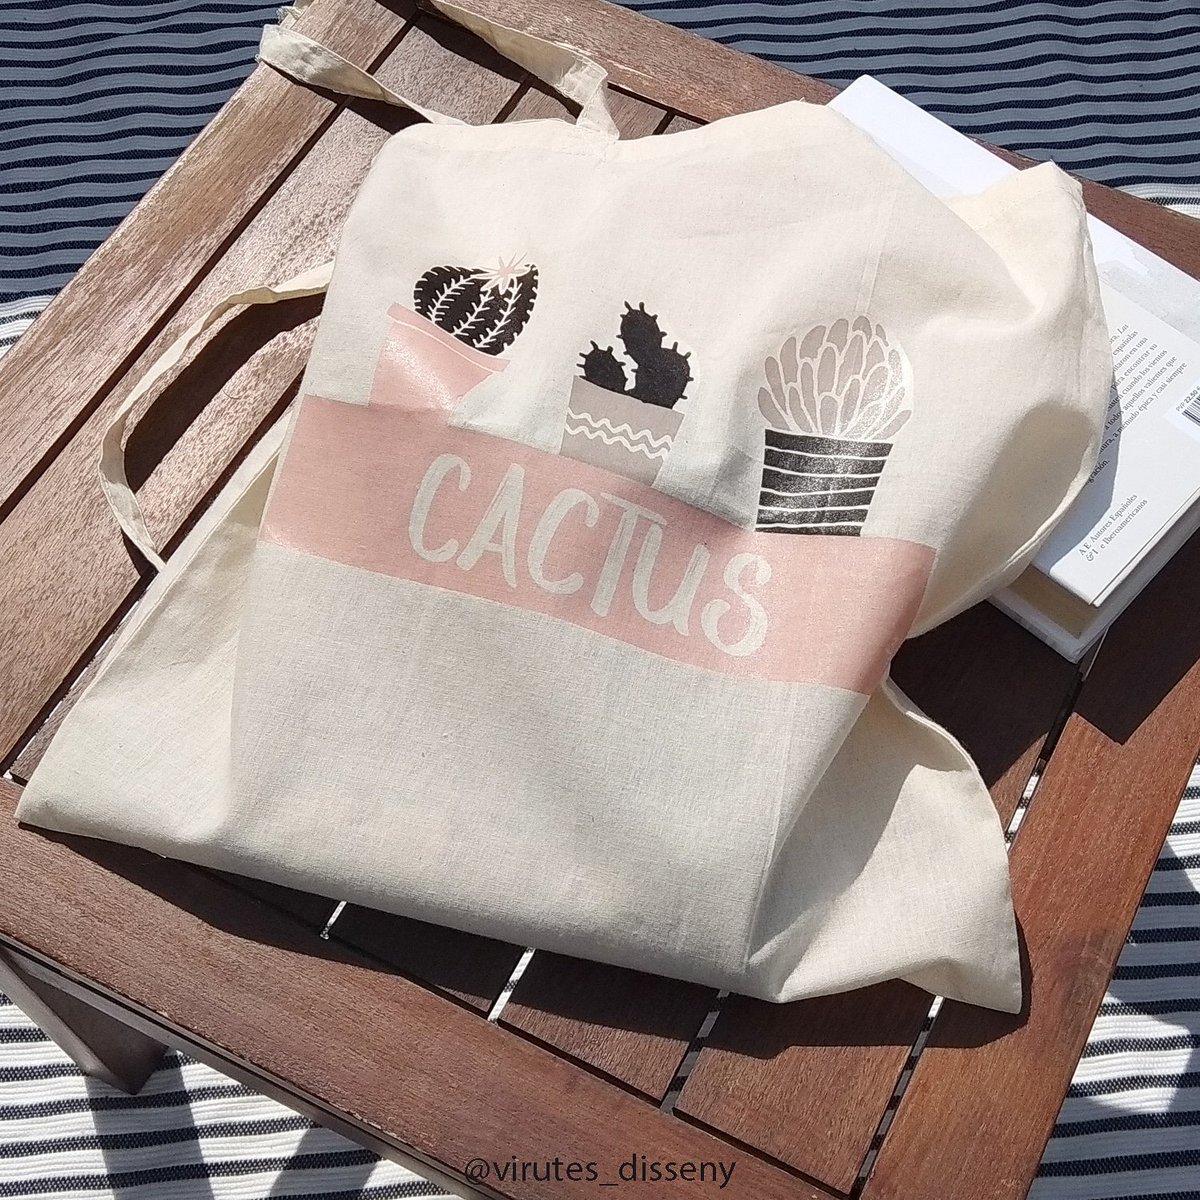 Mi pequeña aportación al medio ambiente, bolsas de algodón para ir a la compra, para la playa o para tomar el aperitivo.
Link directo: etsy.me/2EUPyW1

#bolsaalgodon #bolsanatural #bolsotela #bolsa #tela #algodon #totebag #totebagcactus #cactus #bolsacactus #tote #bolsas